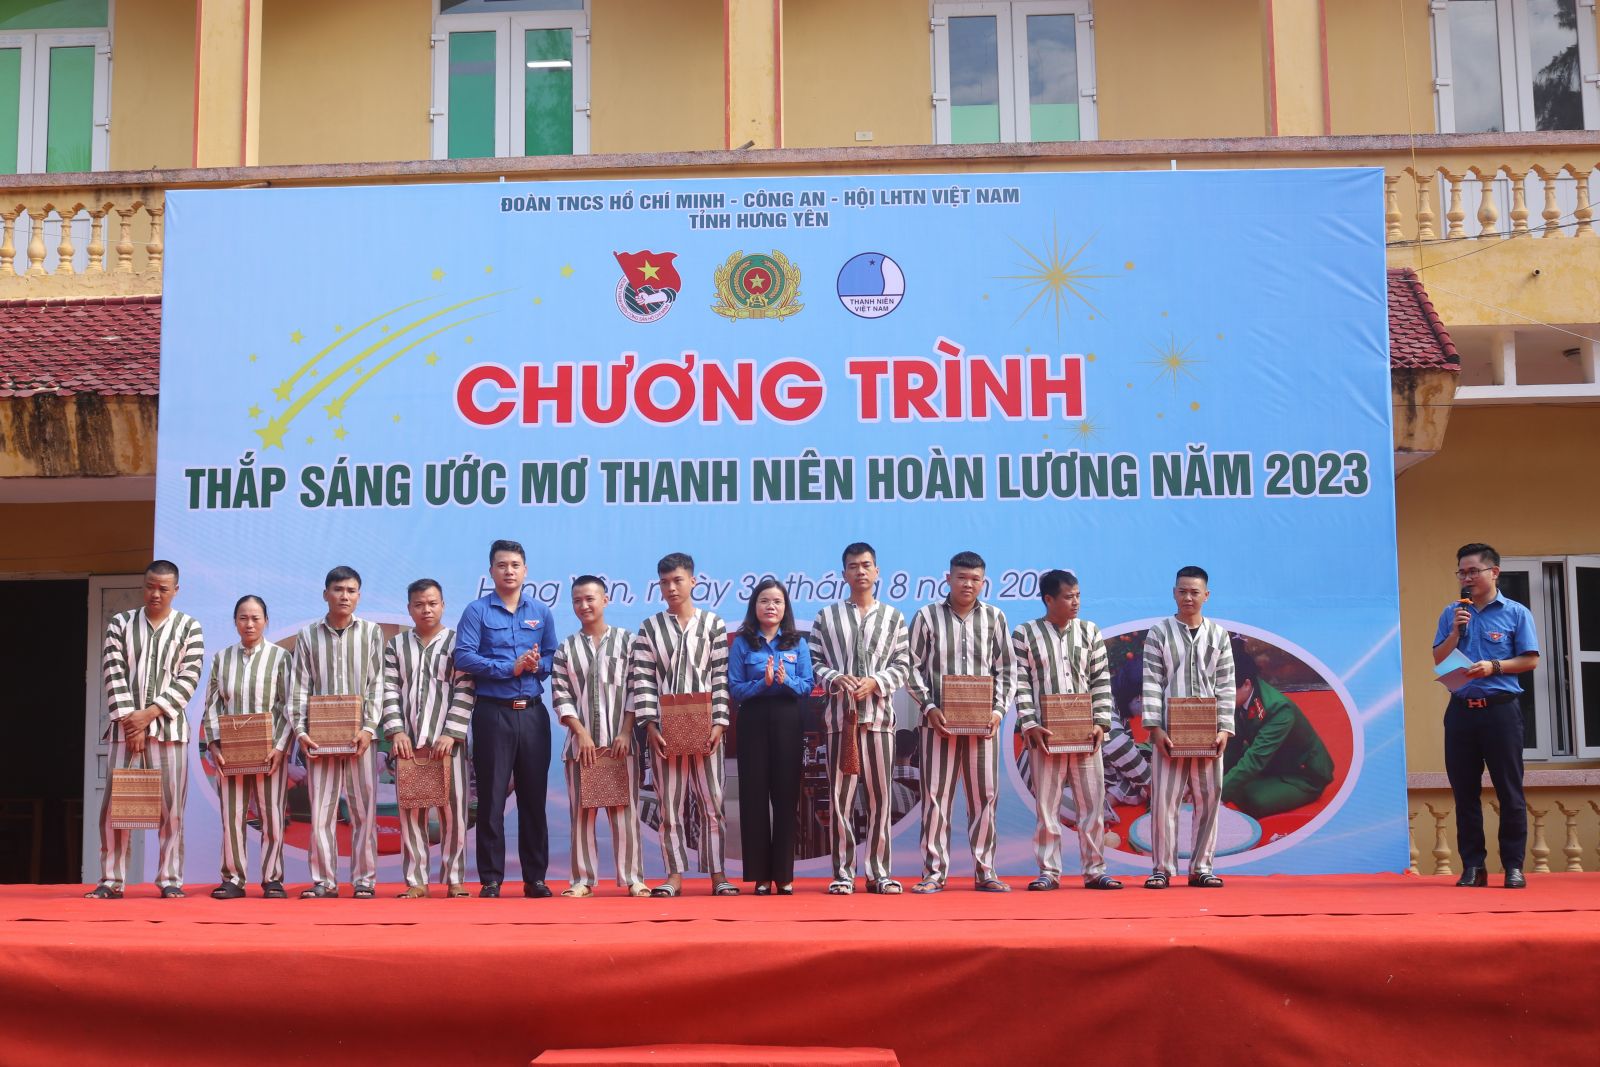 Tỉnh đoàn, Công an tỉnh Hưng Yên tổ chức chương trình "Thắp sáng ước mơ thanh niên hoàn lương" năm 2023